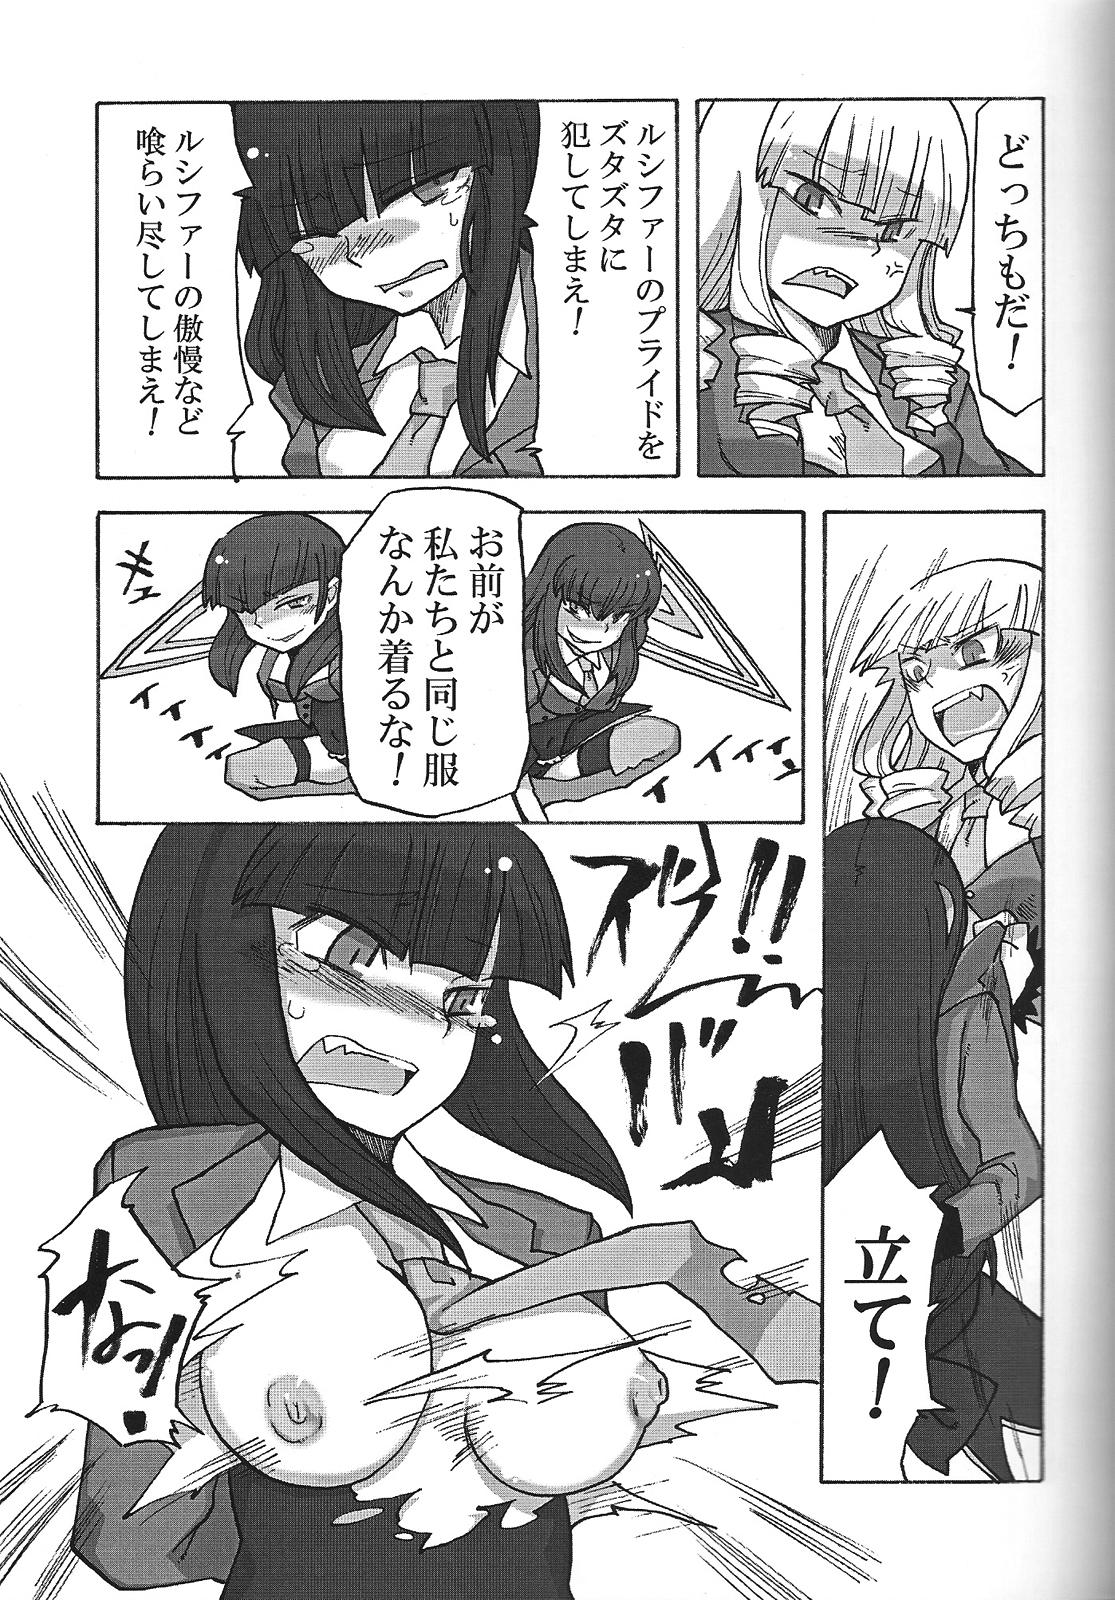 Cumming Nakayoshi 7 Shimai - Umineko no naku koro ni Pack - Page 8